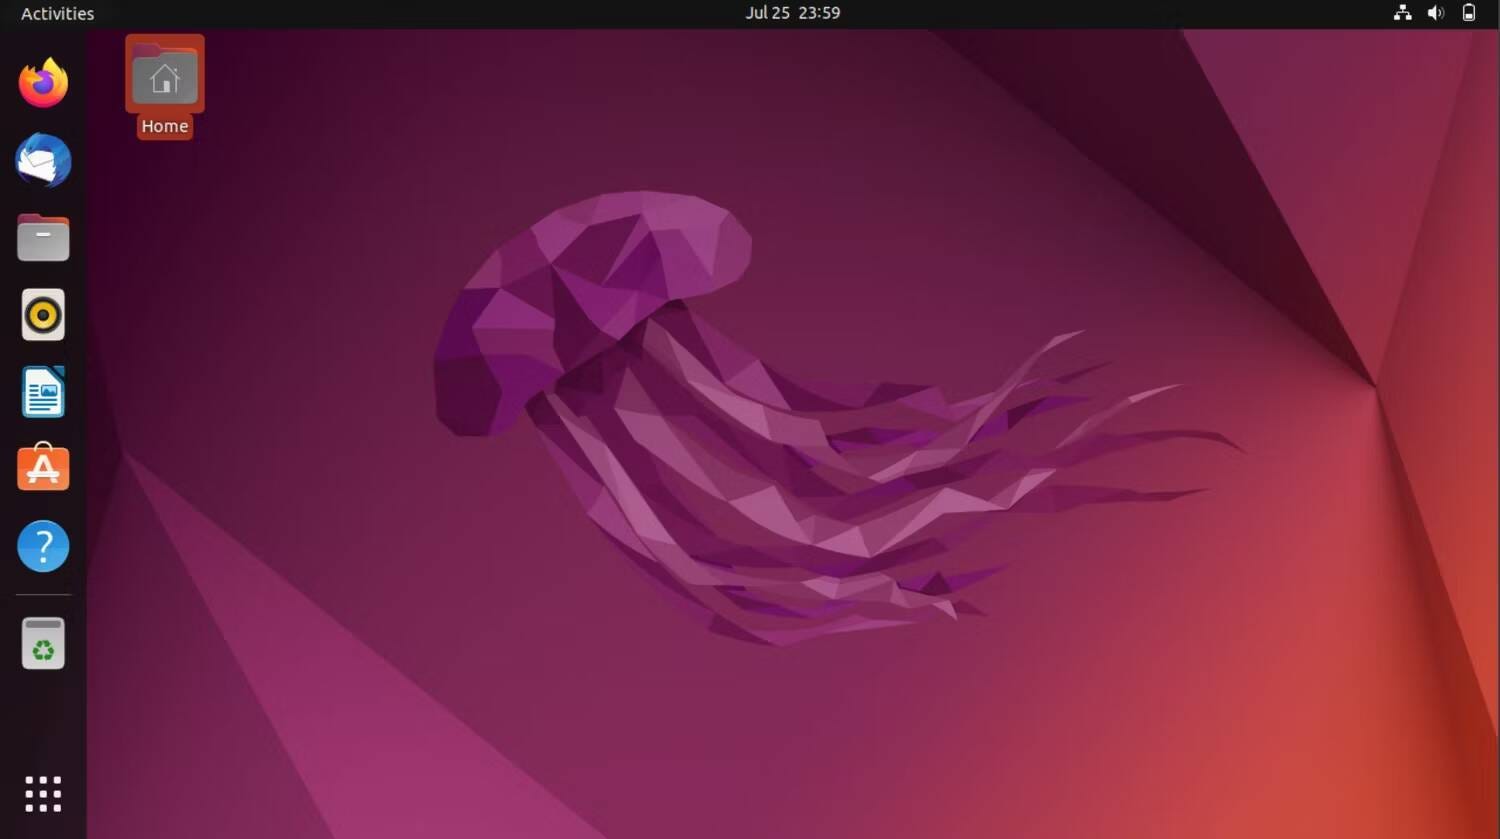 لا تزال Ubuntu هي المُفضلة لدي: أفضل توزيعات Linux في هذا العام مع تصنيفها - لينكس